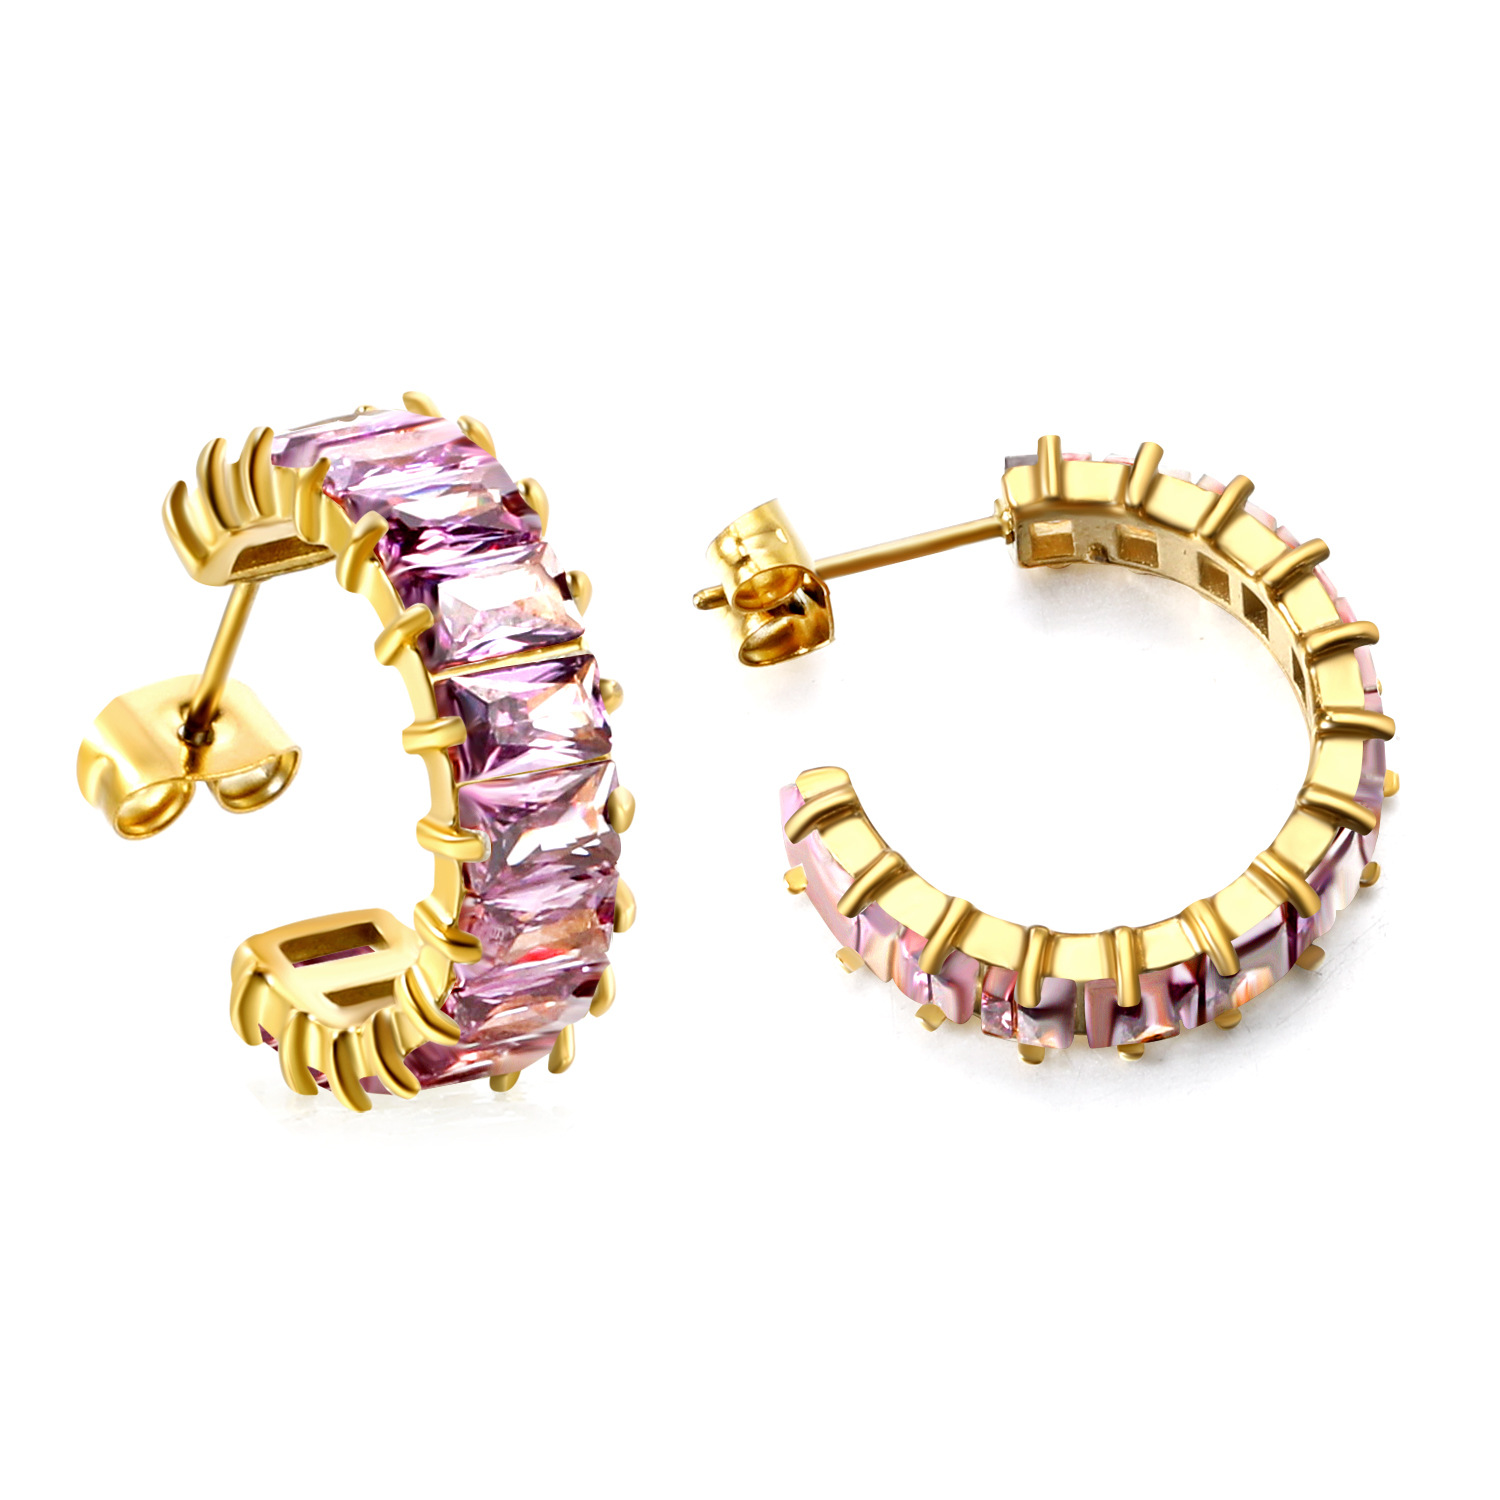 4:Purple diamond earrings, gold